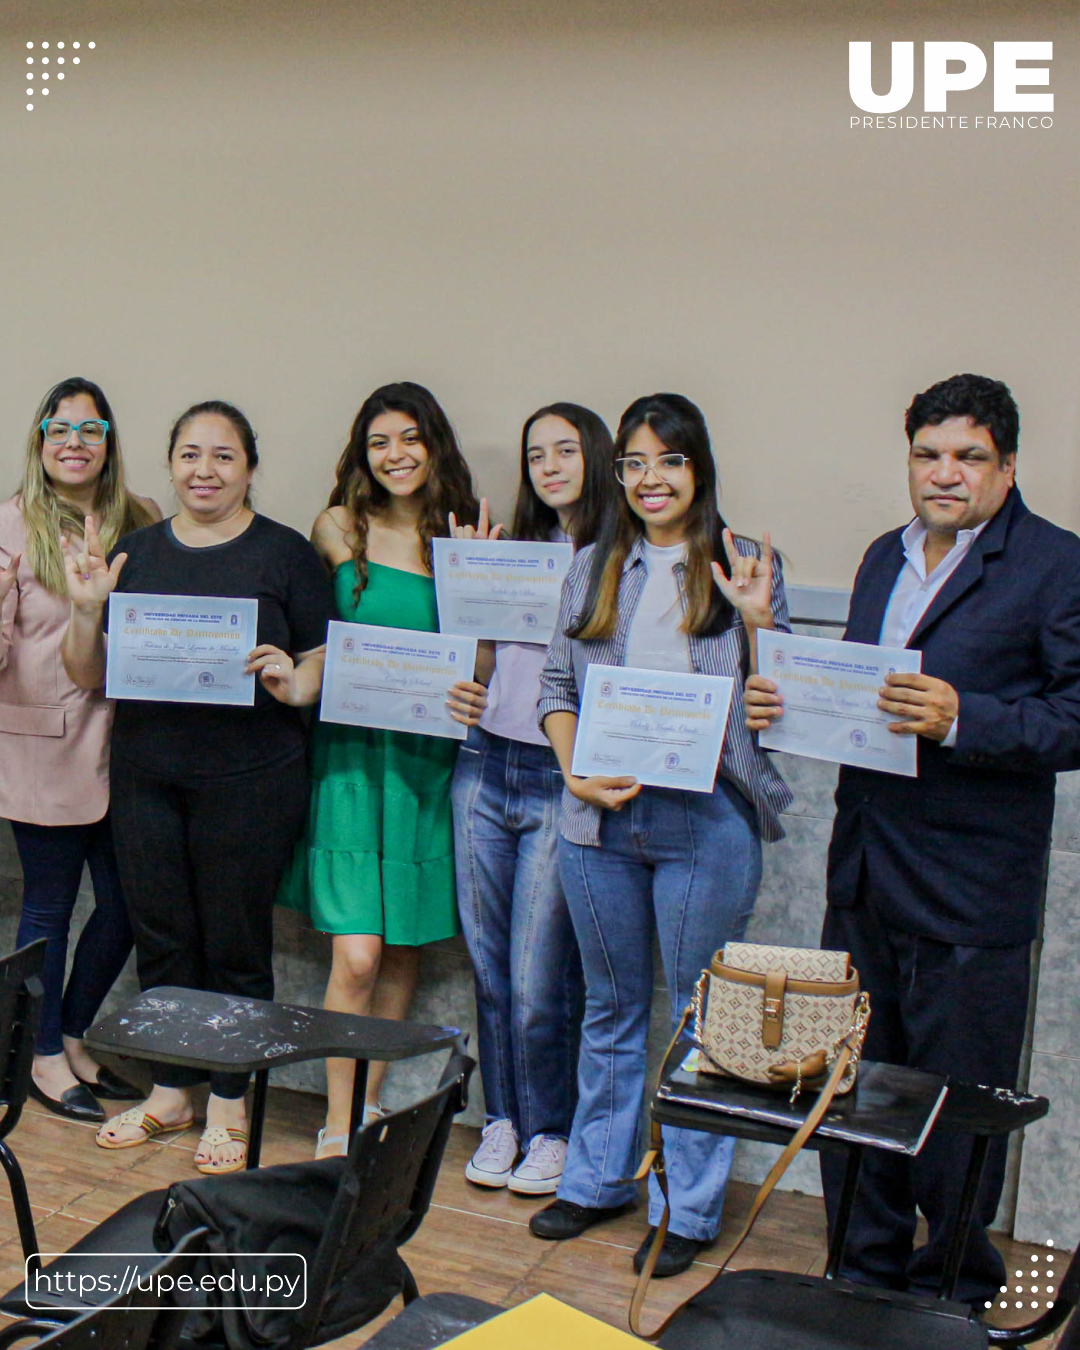 Finaliza el Curso de Lengua de Señas en la UPE: Entrega de certificados